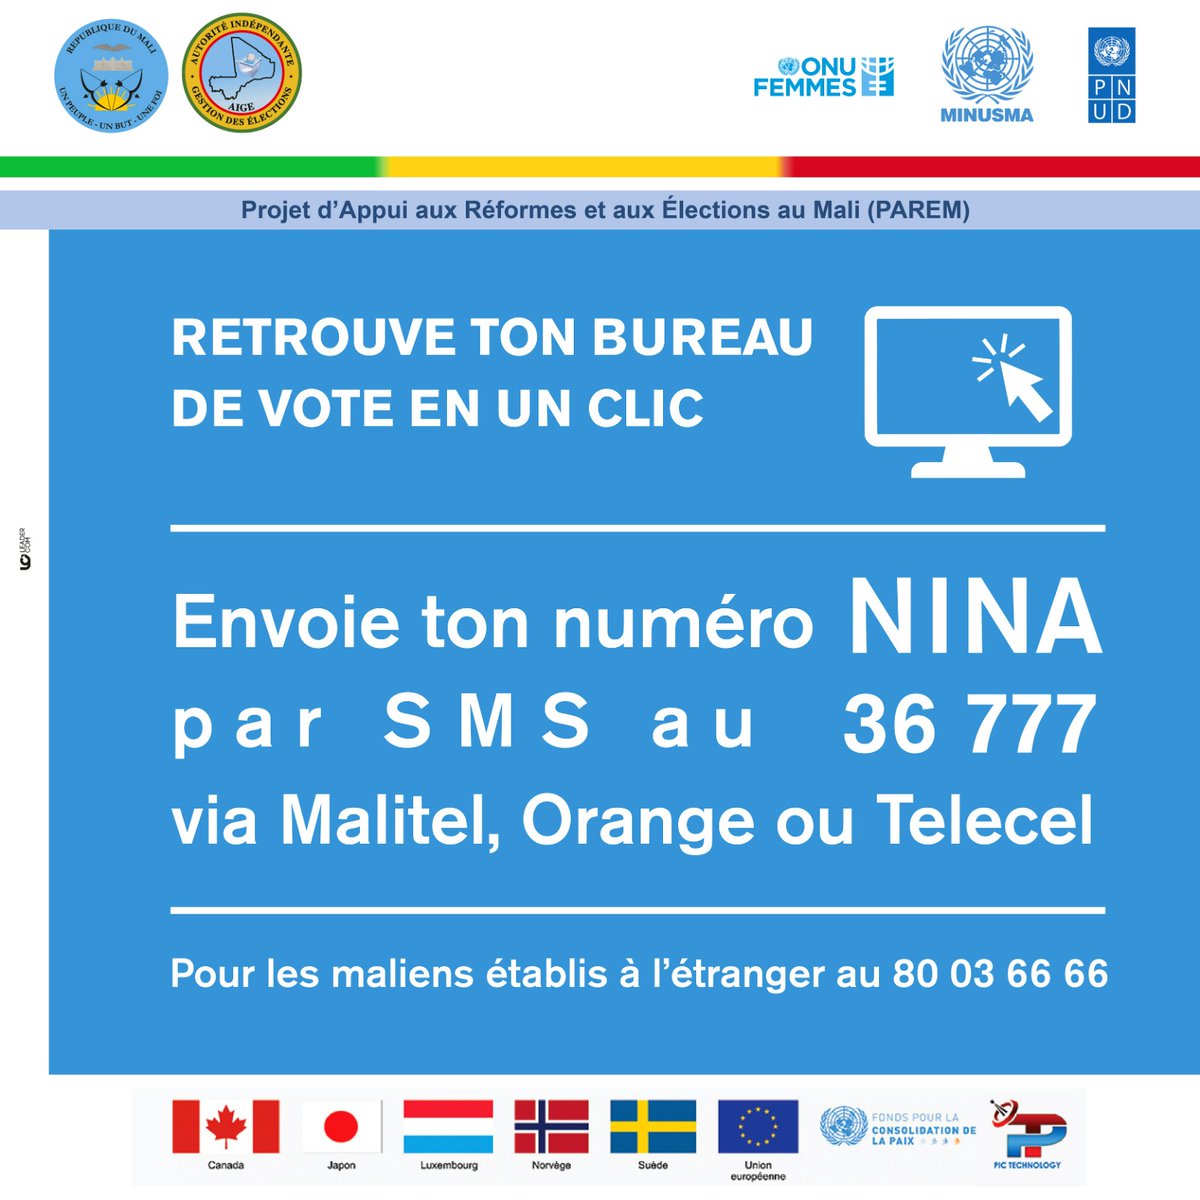 #Mali #France 
Pour connaitre son bureau de vote a partir du son NINA du Mali et de la Diaspora #AIGE #Mali #18juin #Referendum